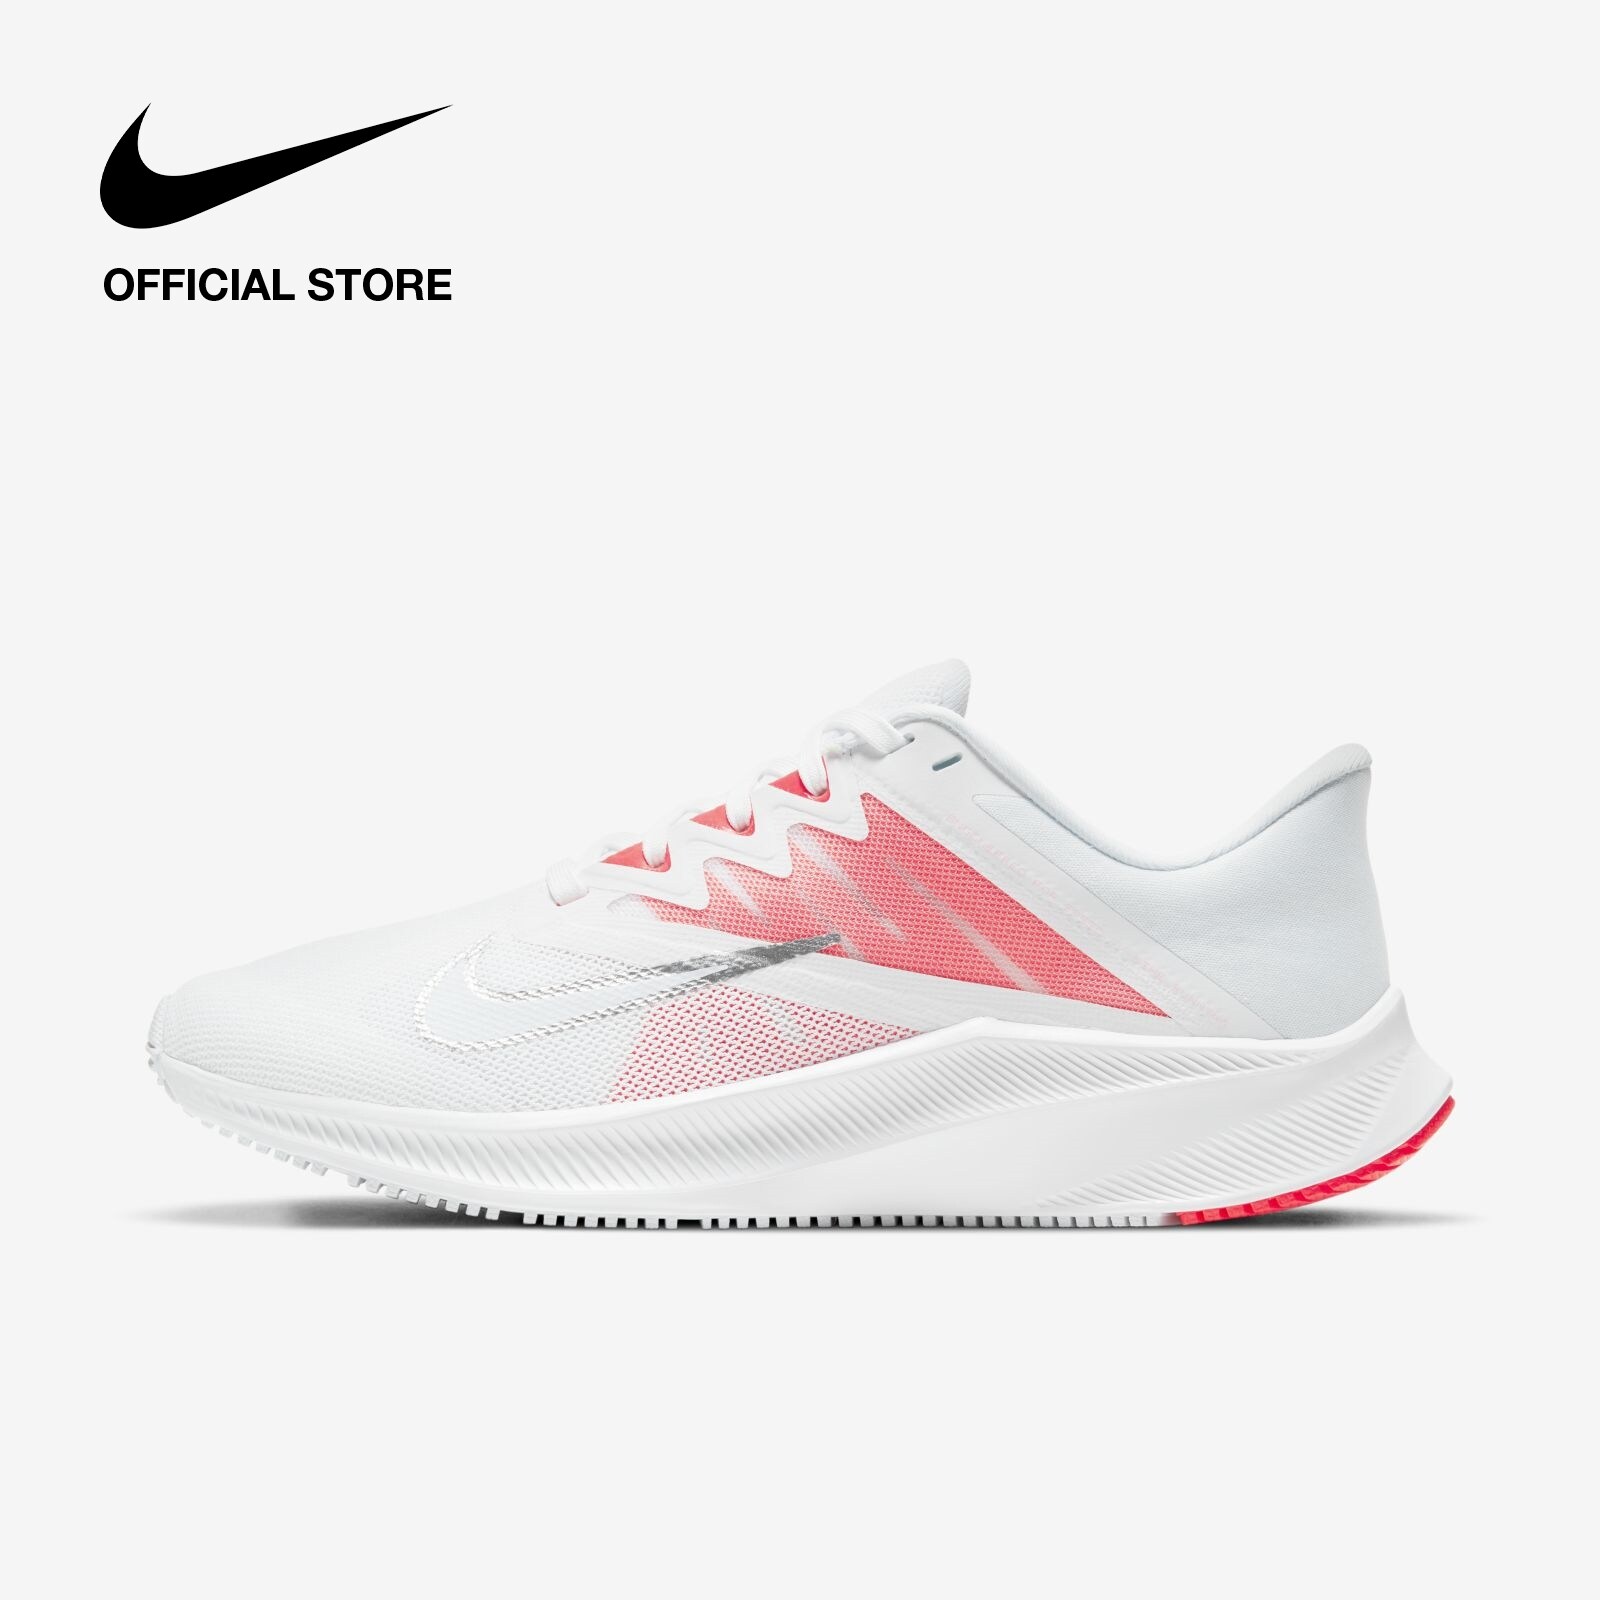 Nike Women's Quest 3 Running Shoes - White ไนกี้ รองเท้าวิ่งผู้หญิง เควสท์ 3 - สีขาว